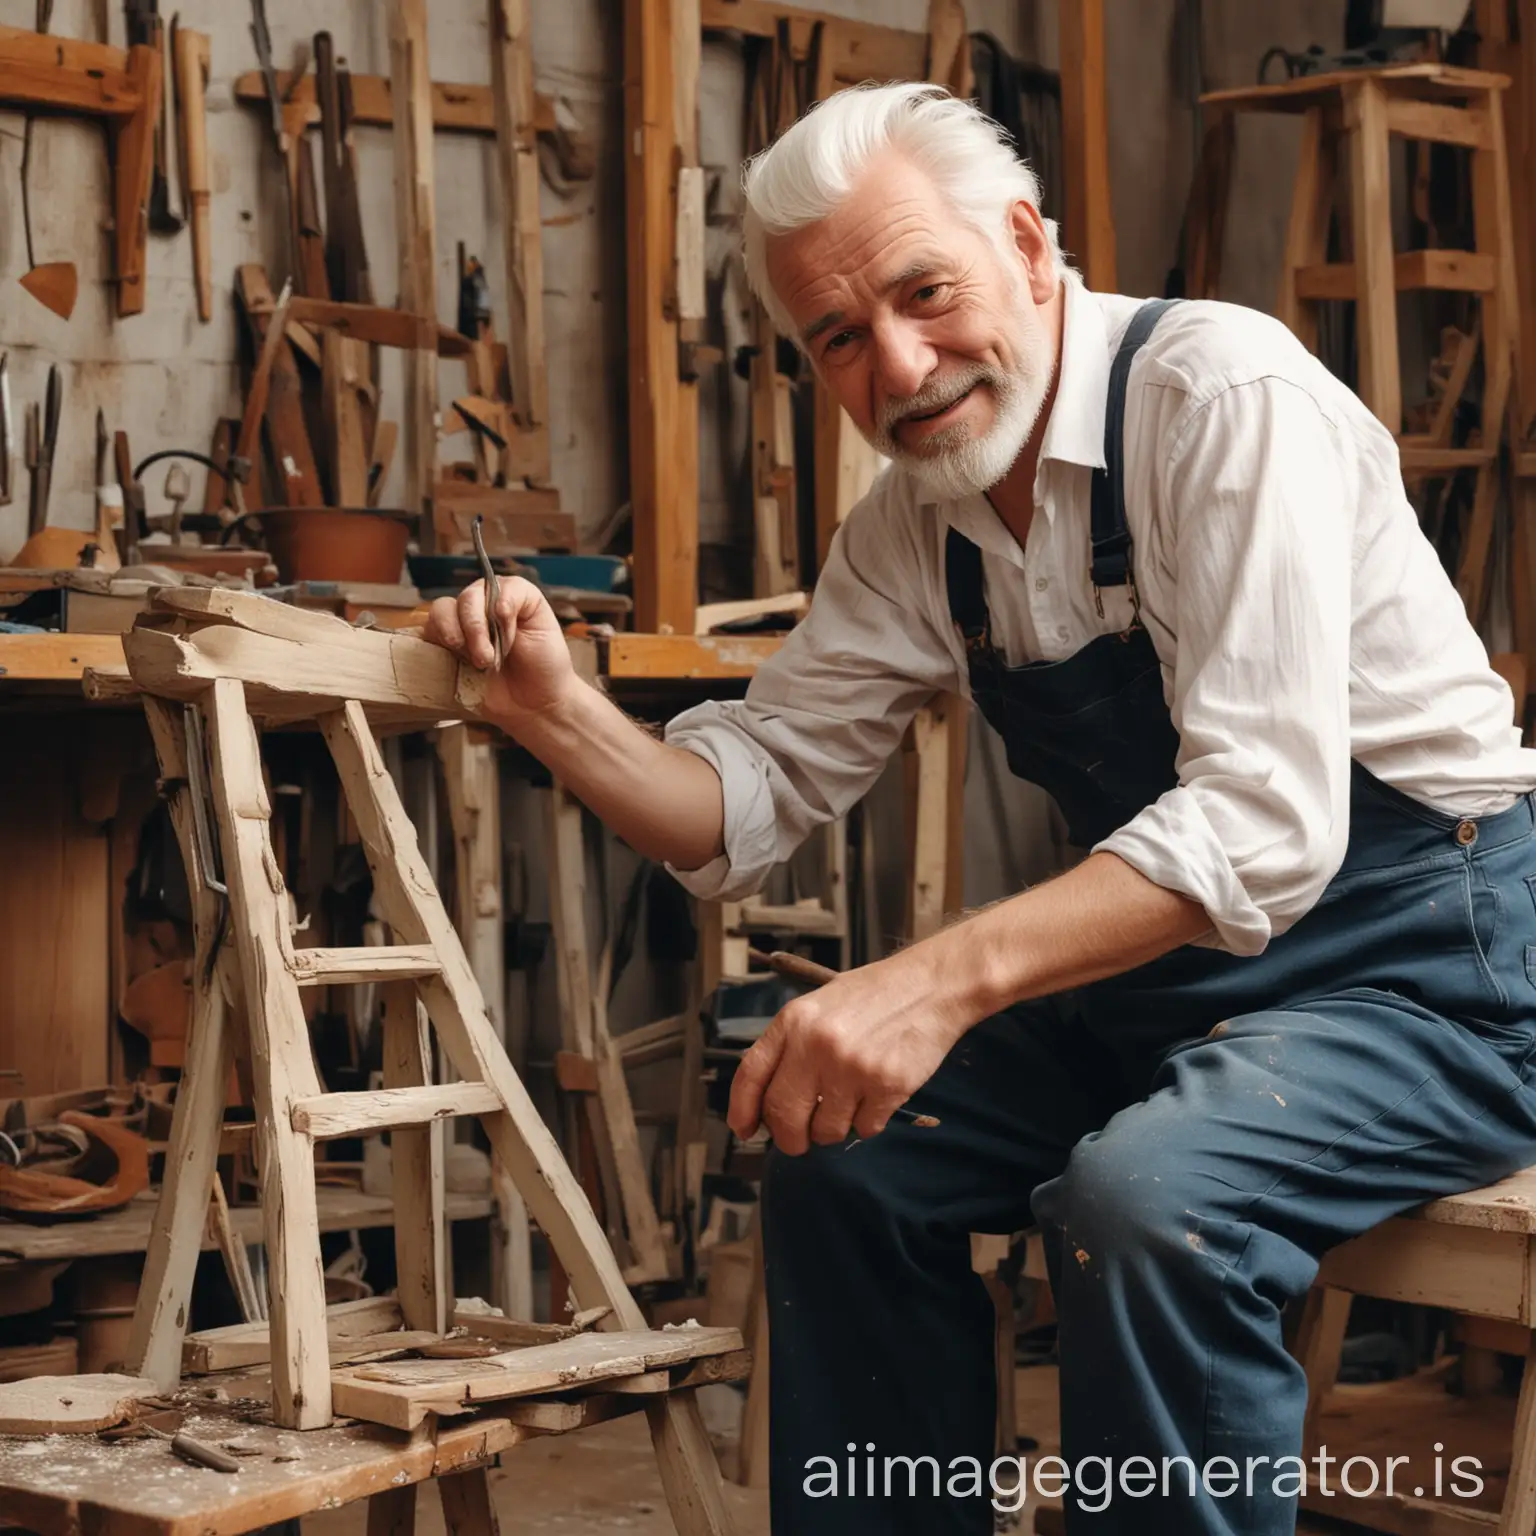 Hochformat: Ein alter mann mit weißen haaren, sitzt auf einem Werkzeugtisch und bastelt an einem kaputten Stuhl. Er ist seht glücklich und motiviert daran zu arbeiten.